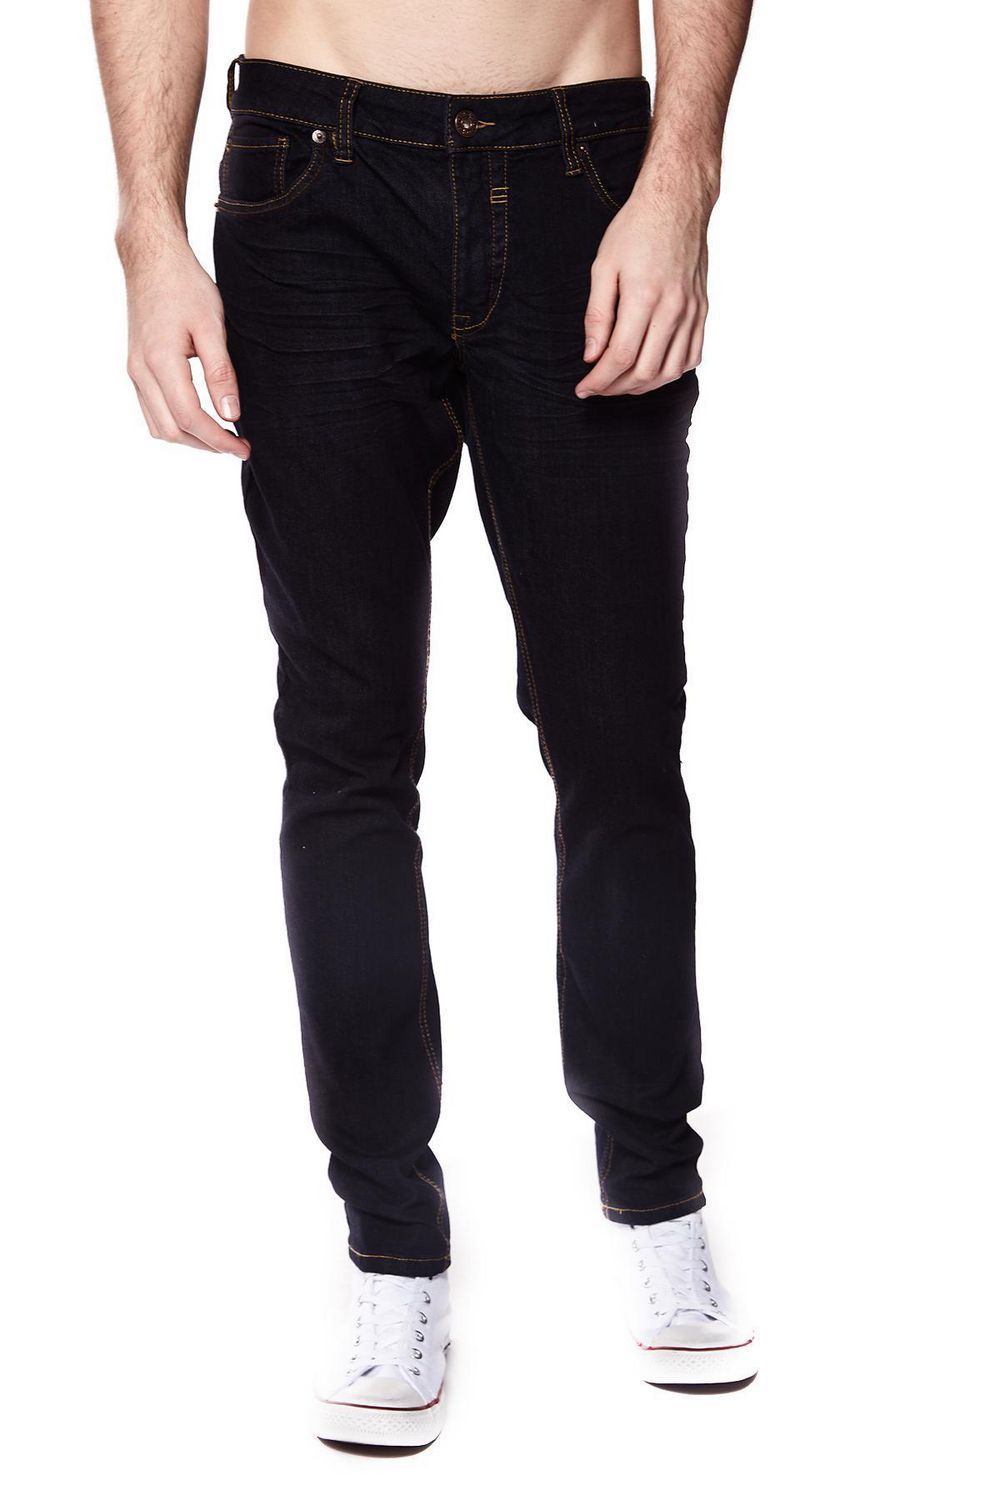 Jeaniologie ™ Men 5-Pocket Slim Fit Jeans | Blue-Black Wash